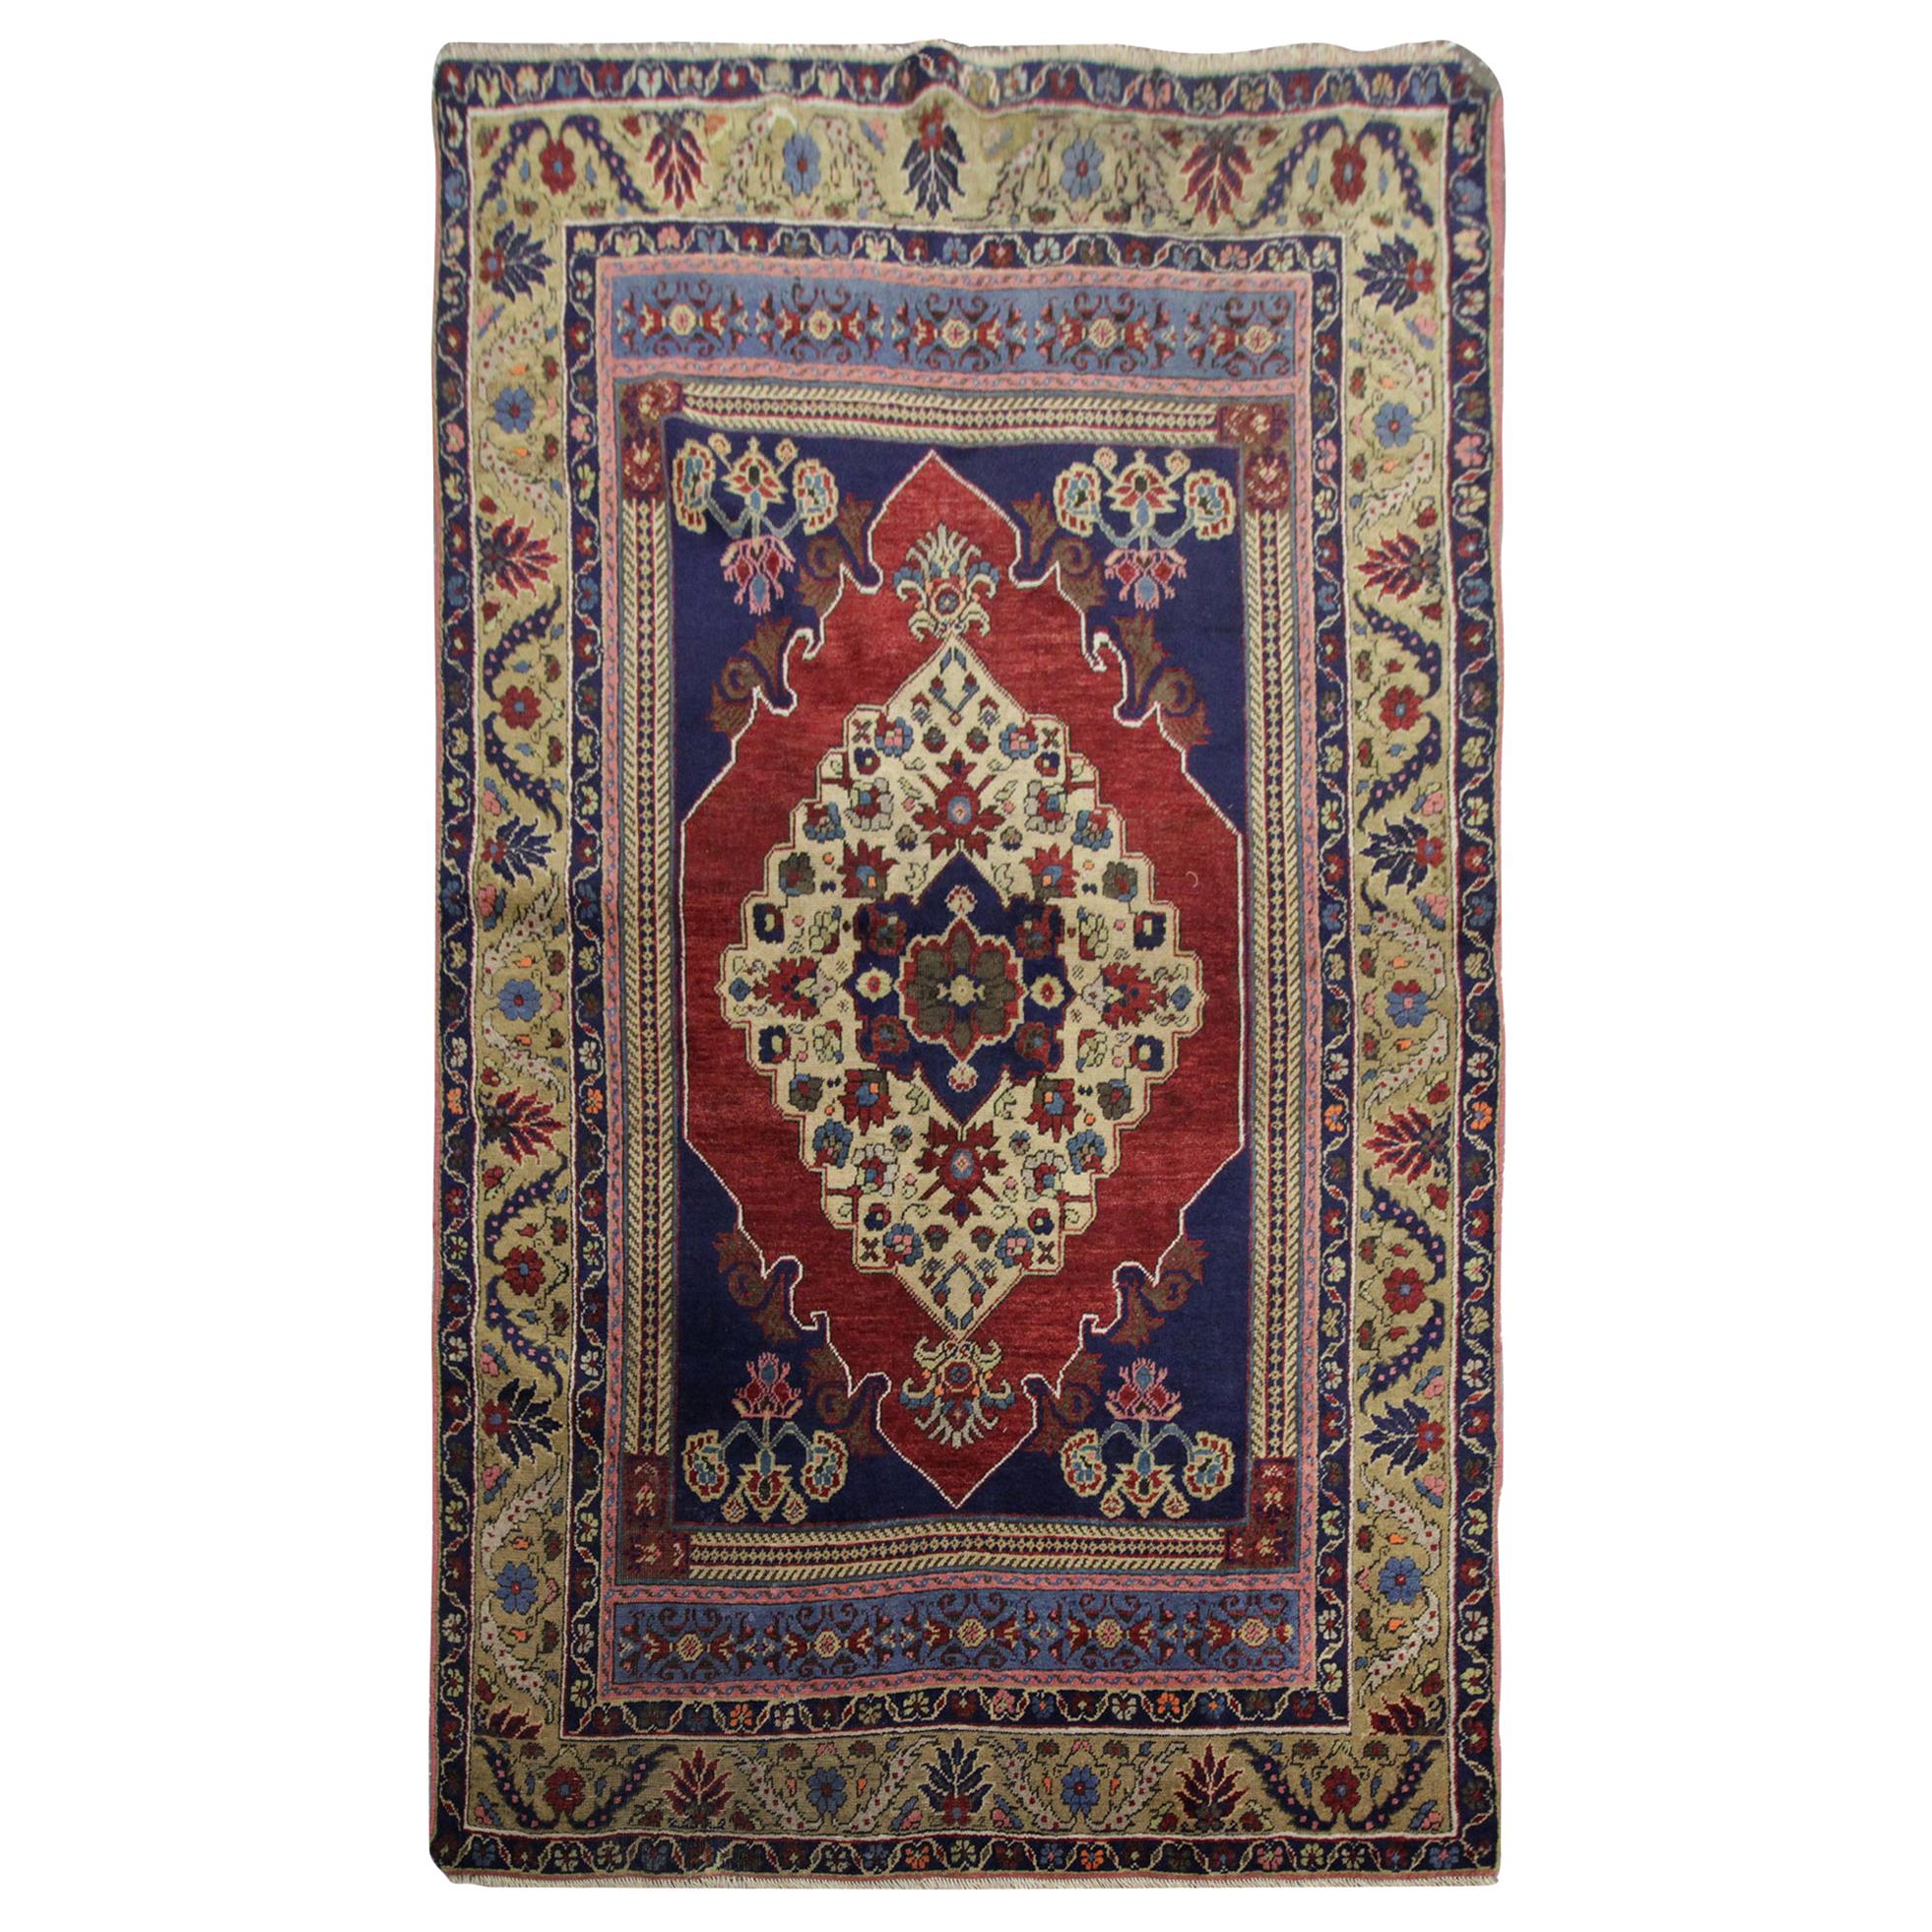 Blue Antique Rug Turkish Living Room Rug, Floral Design Red Wool Carpet for Sale